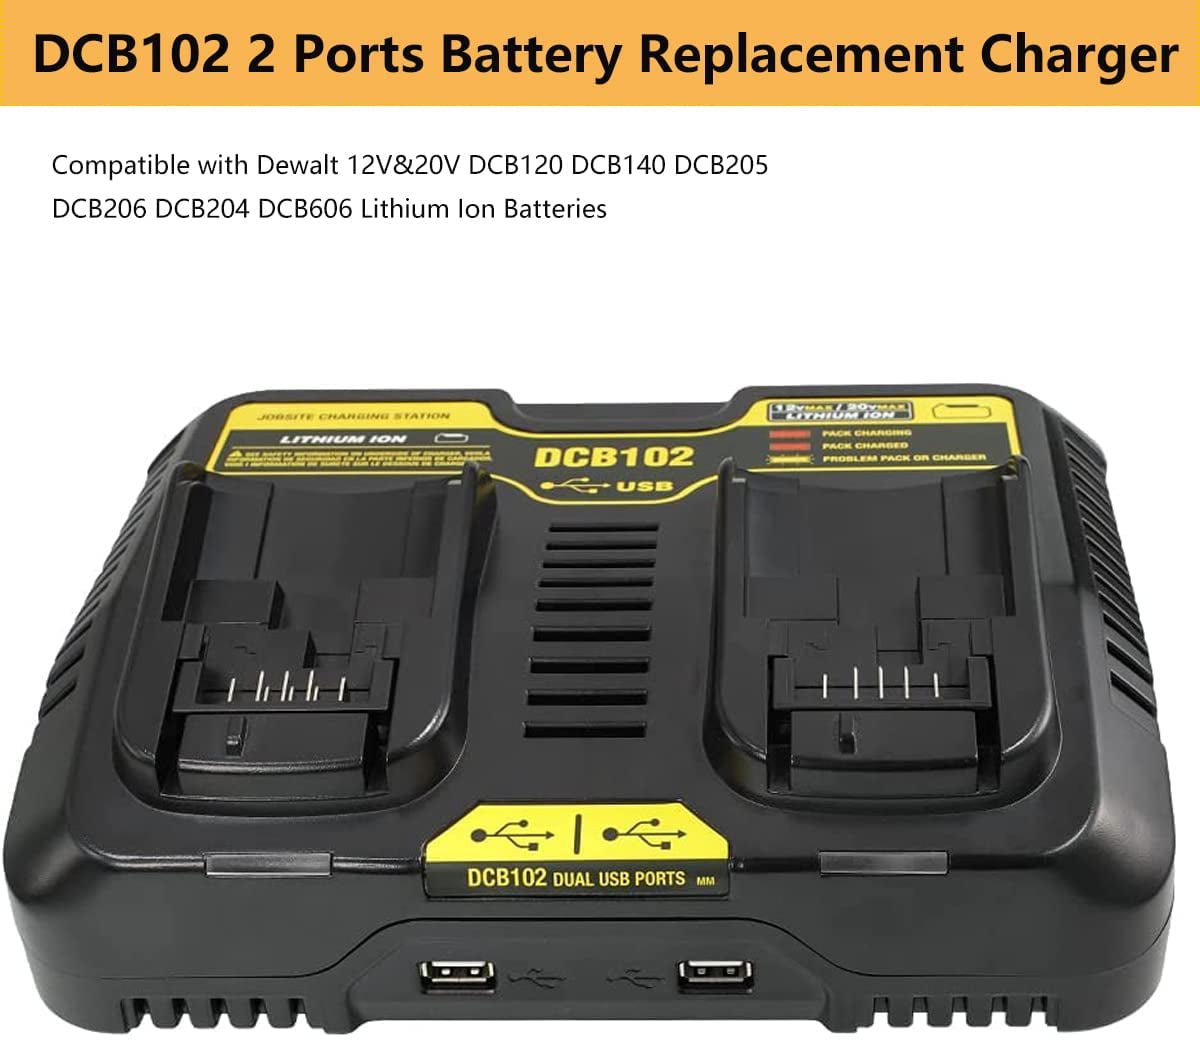 Dewalt DCB102 10.8-18V 4.0A Dual Lithium Ion Battery Charger 220V 